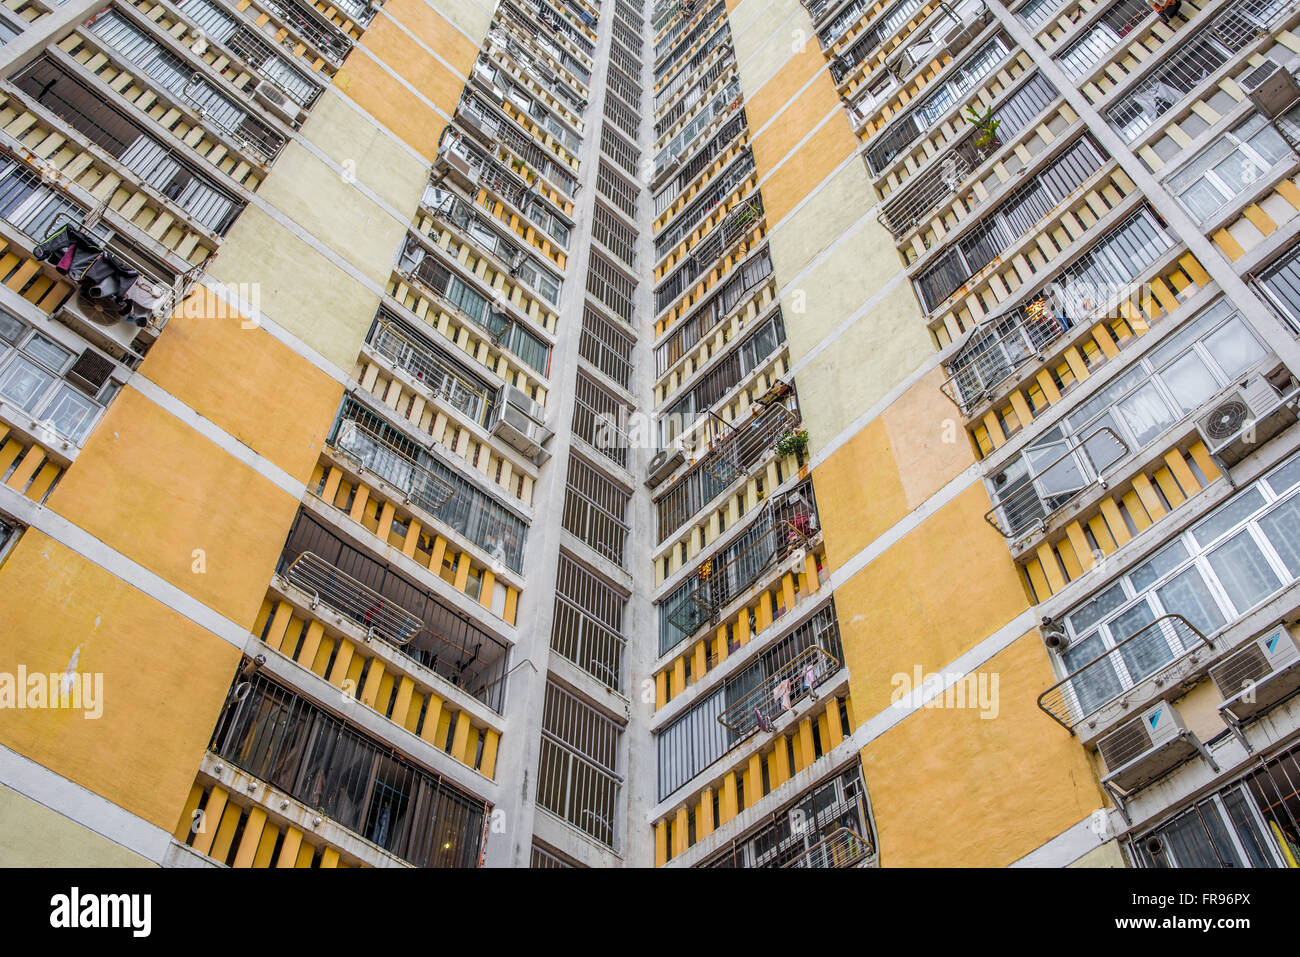 Público de Hong Kong inmuebles construidos por el gobierno Foto de stock